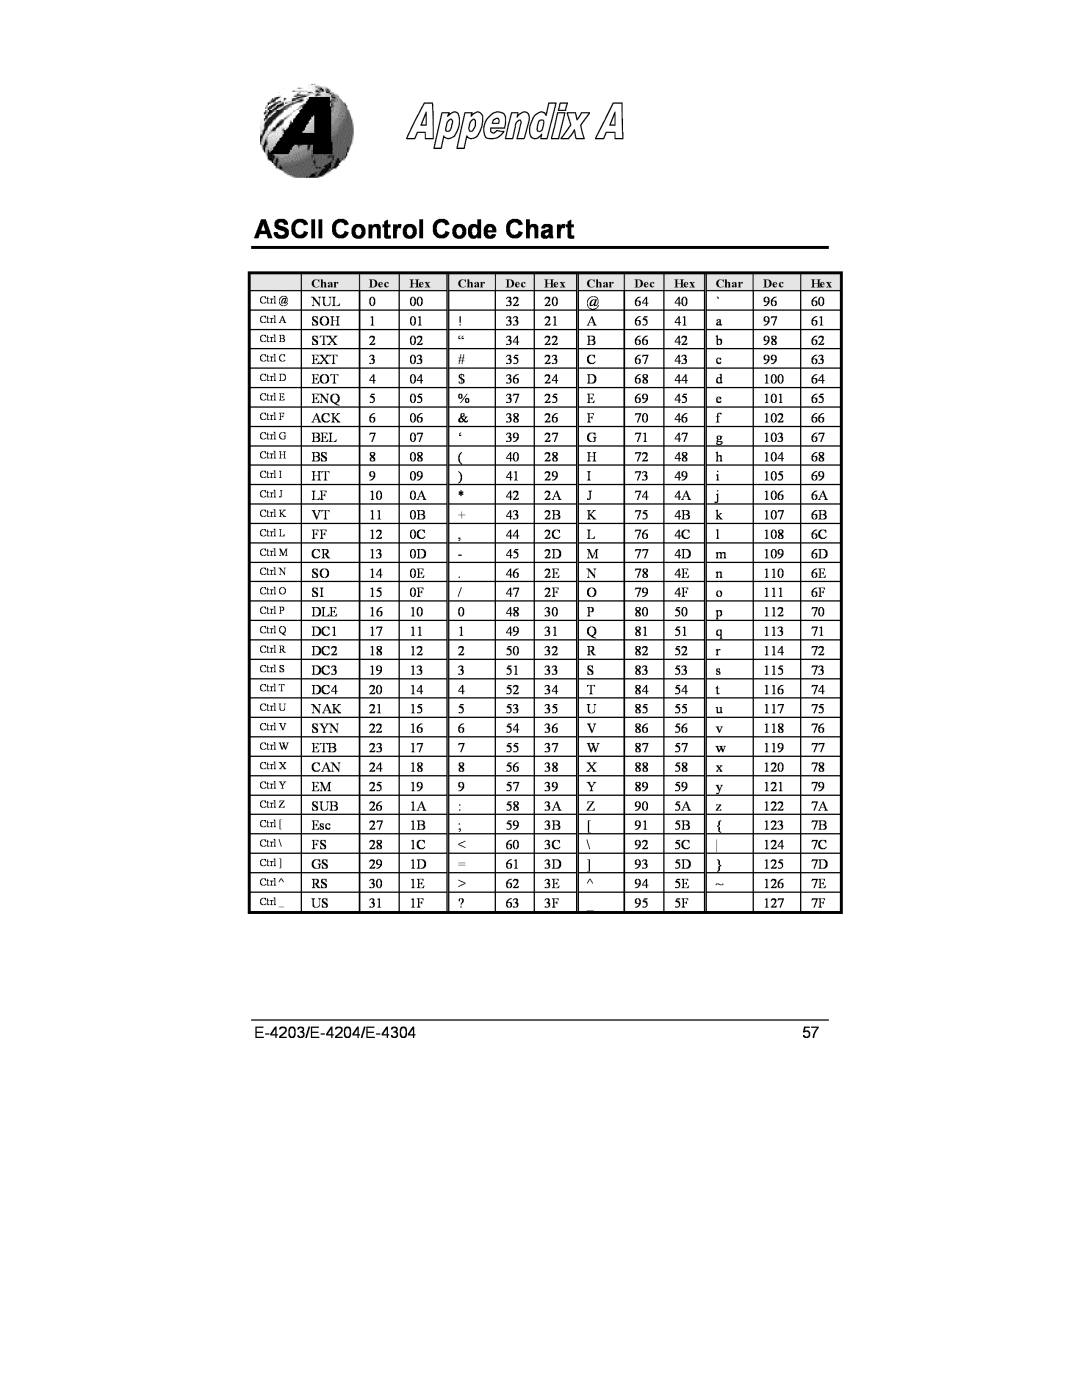 Datamax E-4304e manual ASCII Control Code Chart, E-4203/E-4204/E-4304 